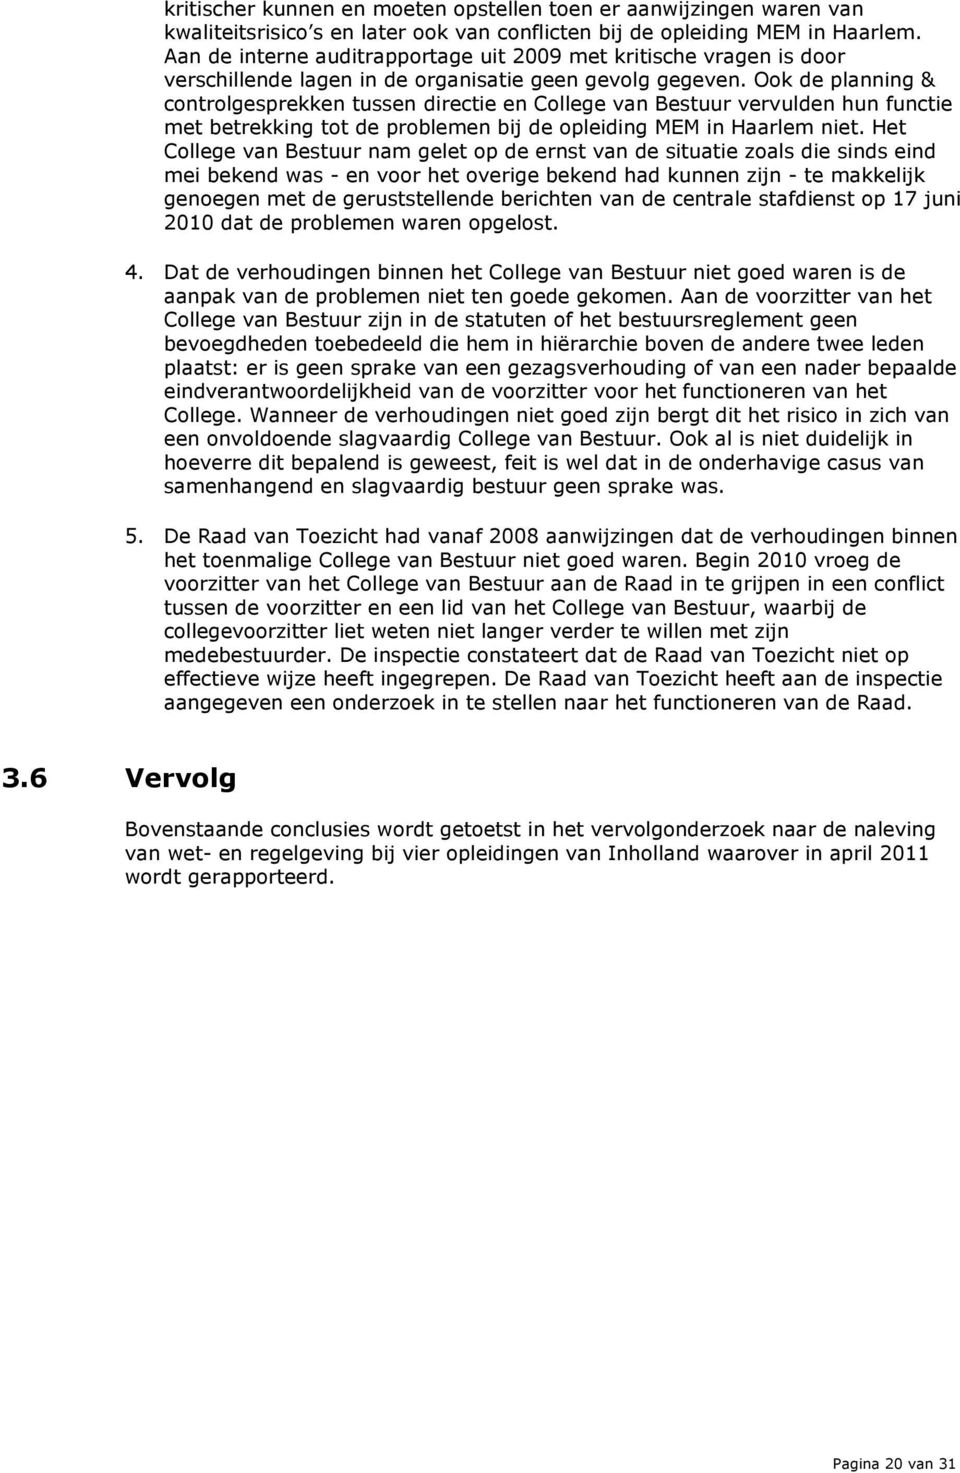 Ook de planning & controlgesprekken tussen directie en College van Bestuur vervulden hun functie met betrekking tot de problemen bij de opleiding MEM in Haarlem niet.